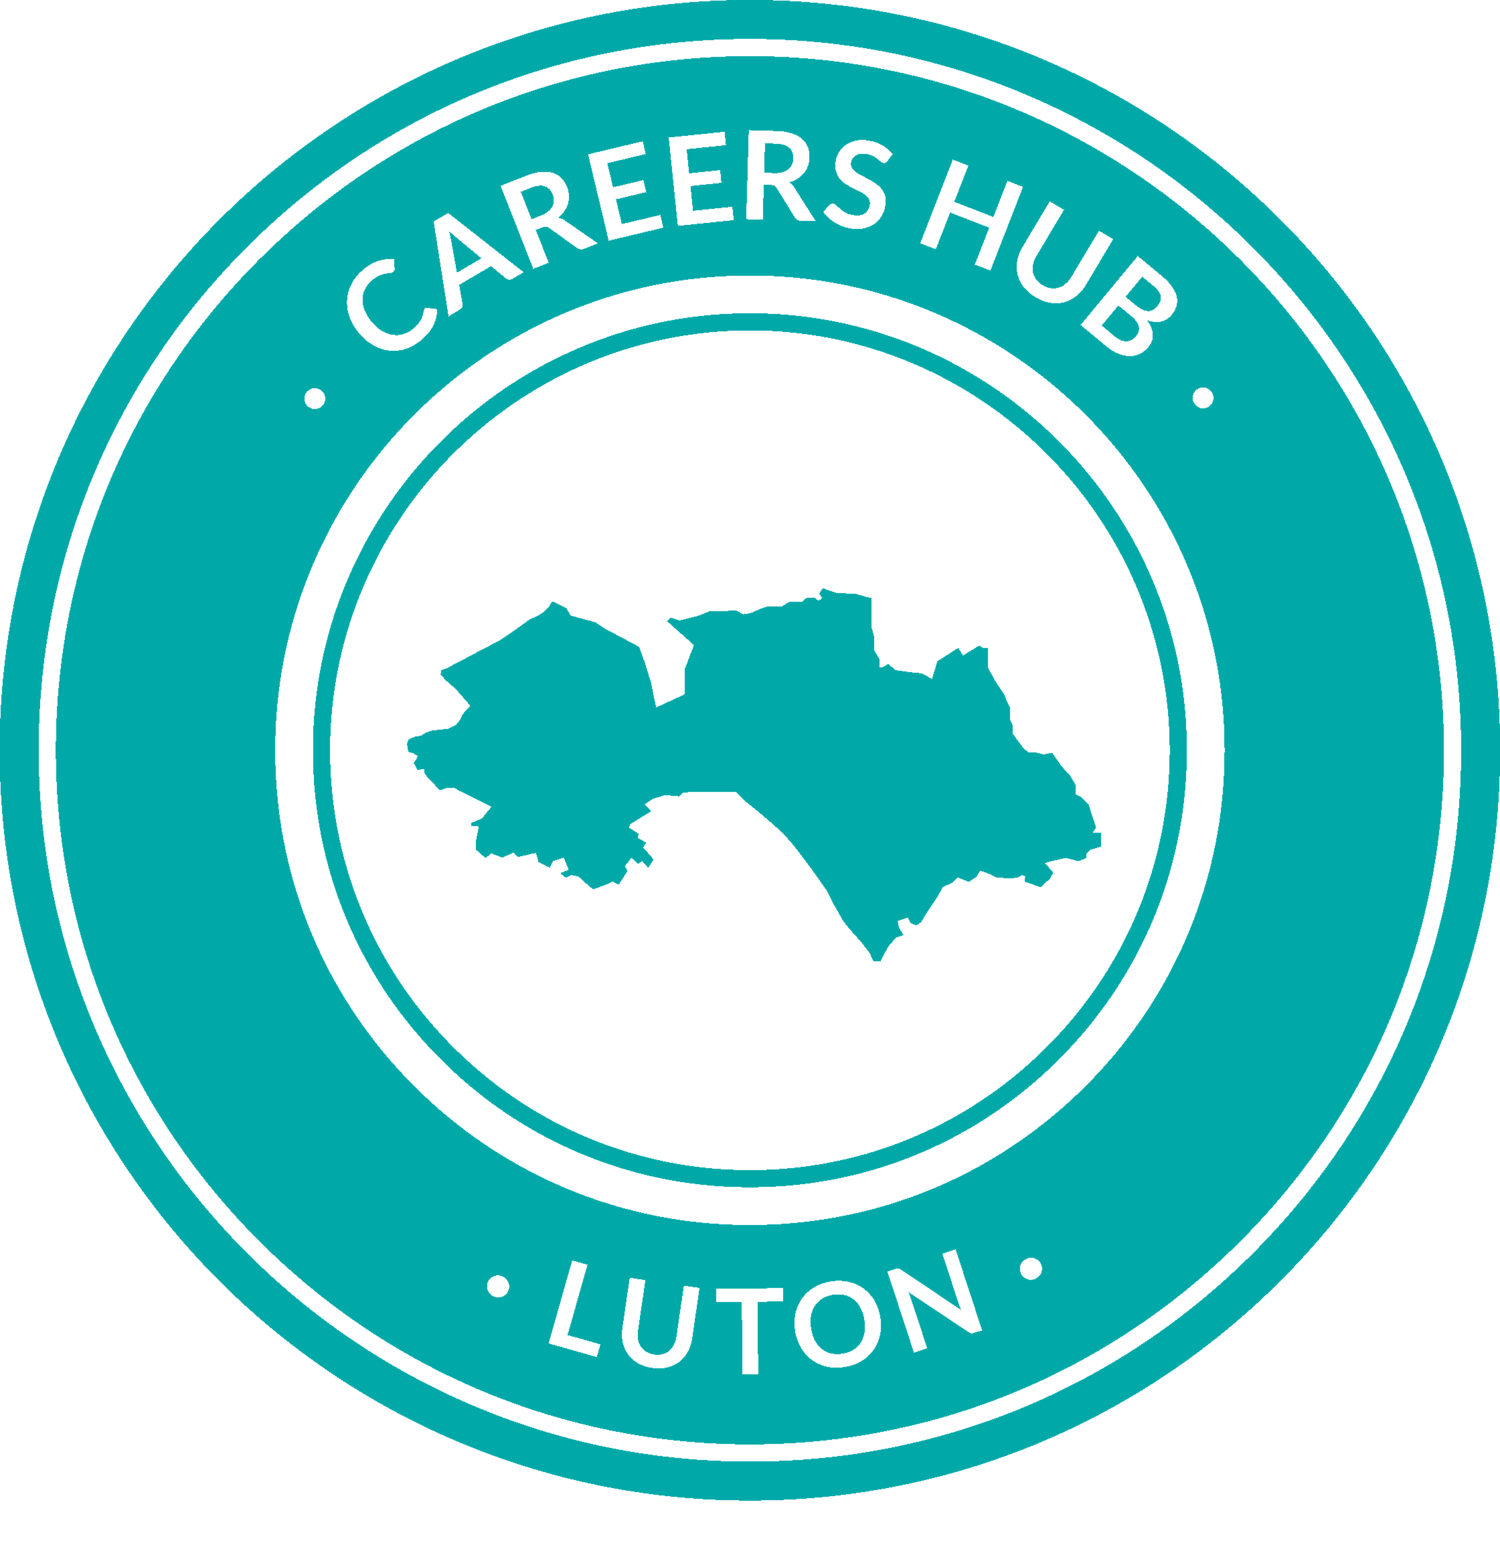 Careers Hub Luton